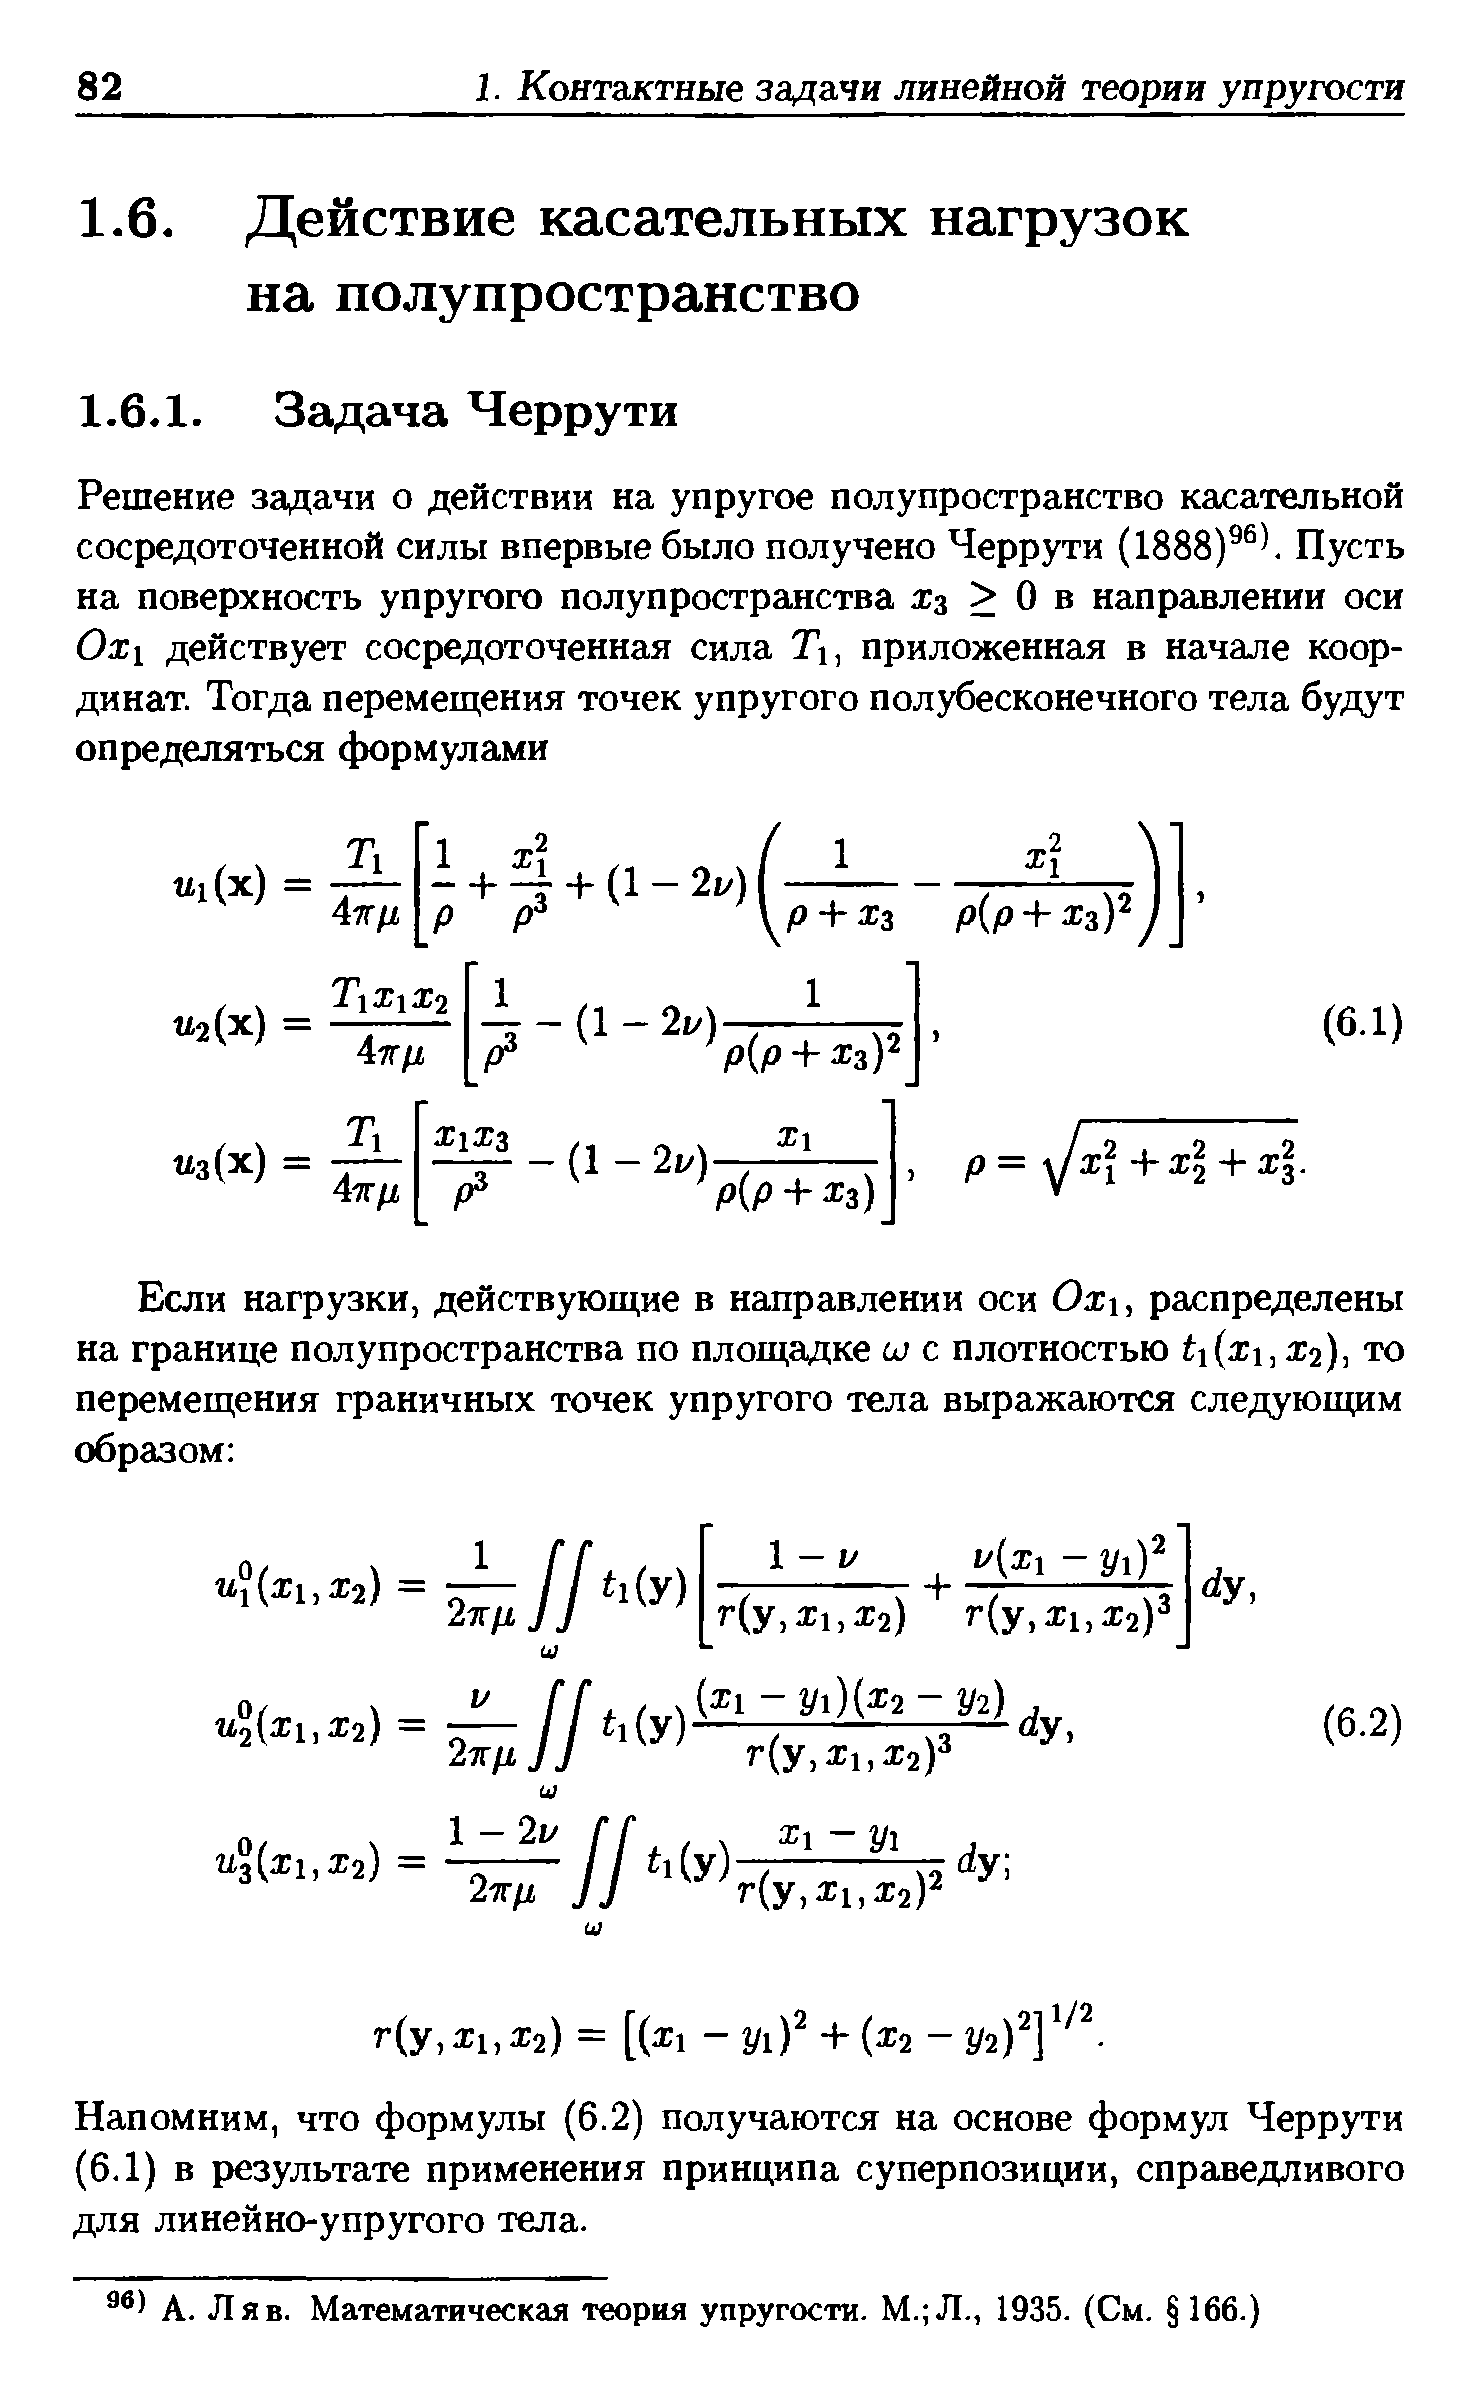 Напомним, что формулы (6.2) получаются на основе формул Черрути (6.1) в результате применения принципа суперпозиции, справедливого для линейно-упругого тела.
